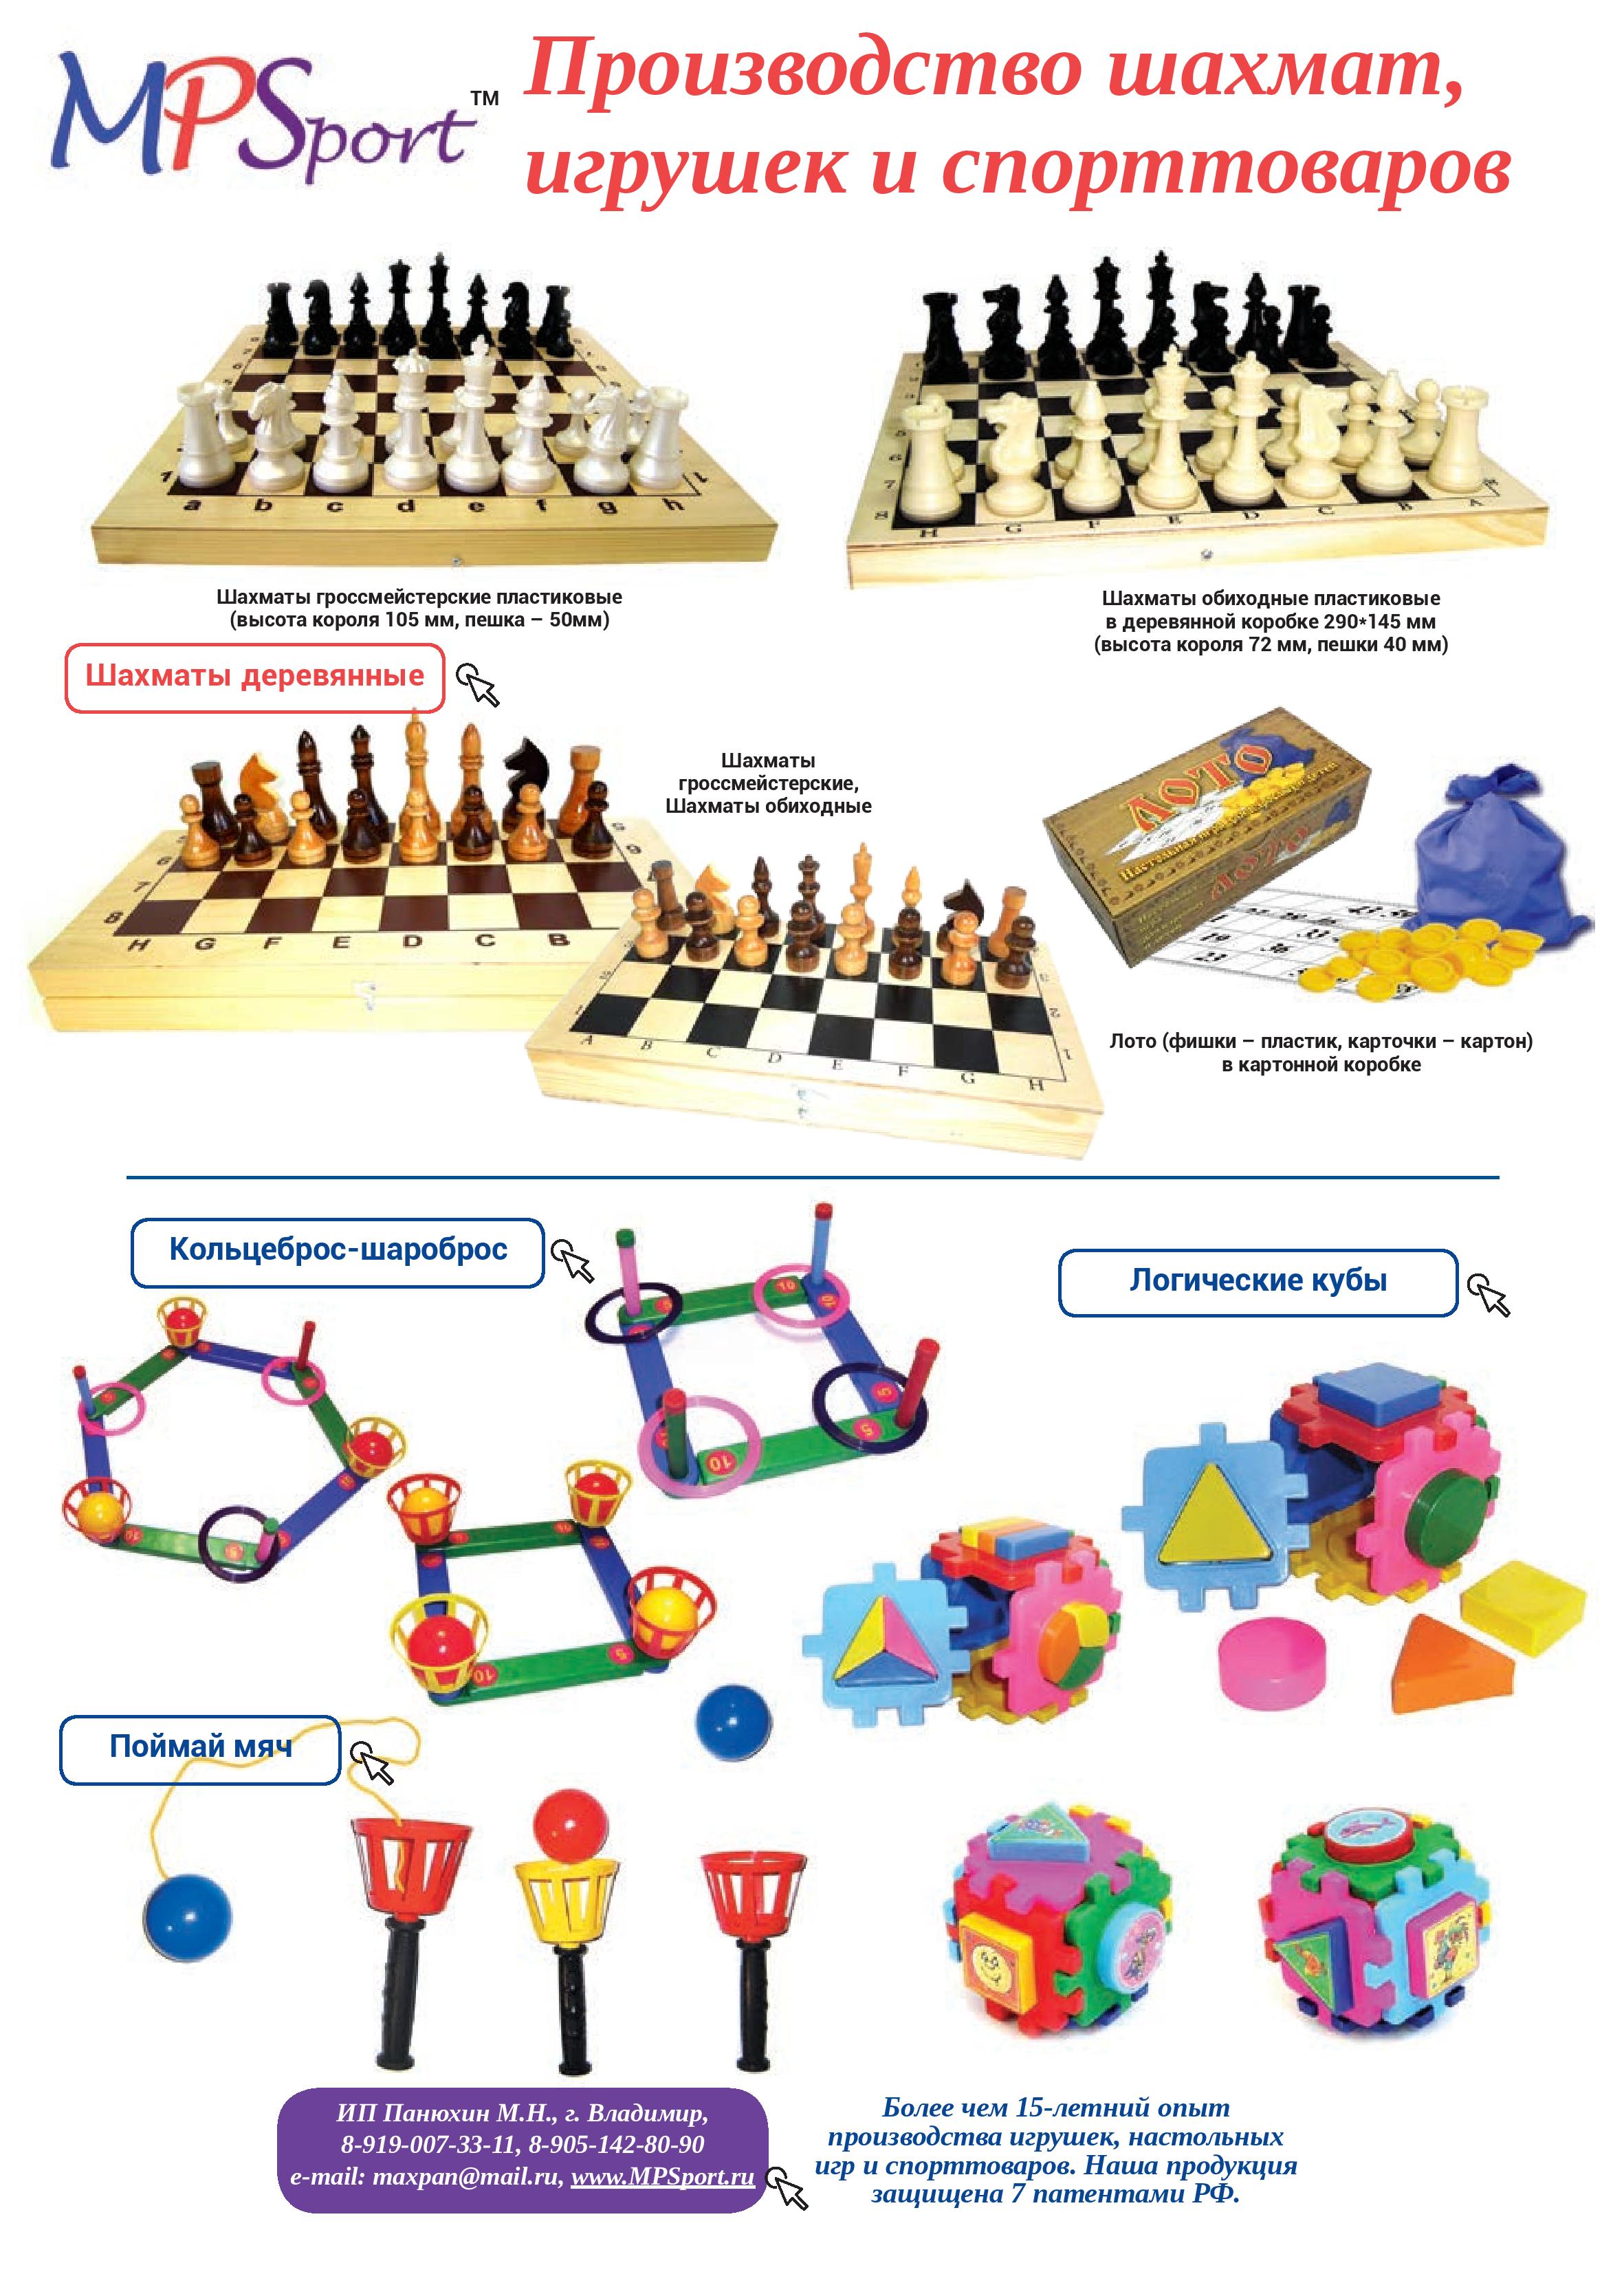 Производство шахмат, игрушек и спорттоваров